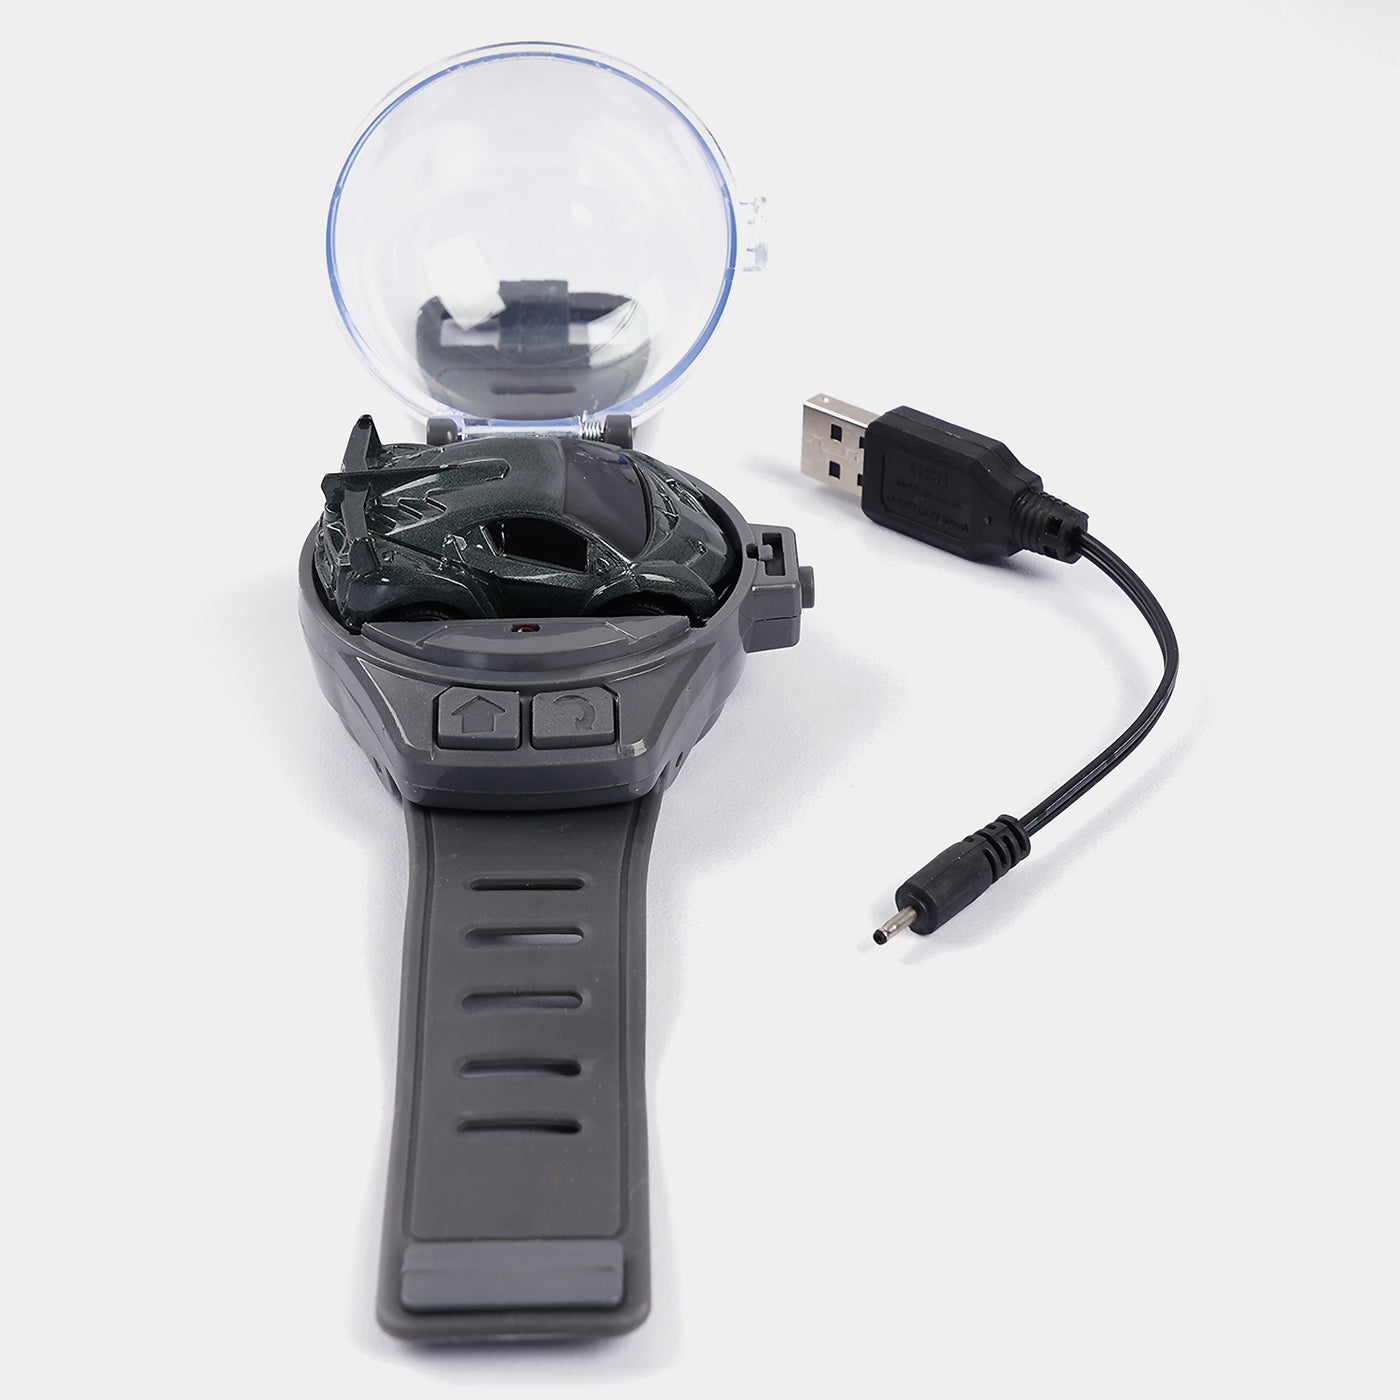 Mini Watch Remote Control Car - Dark Grey